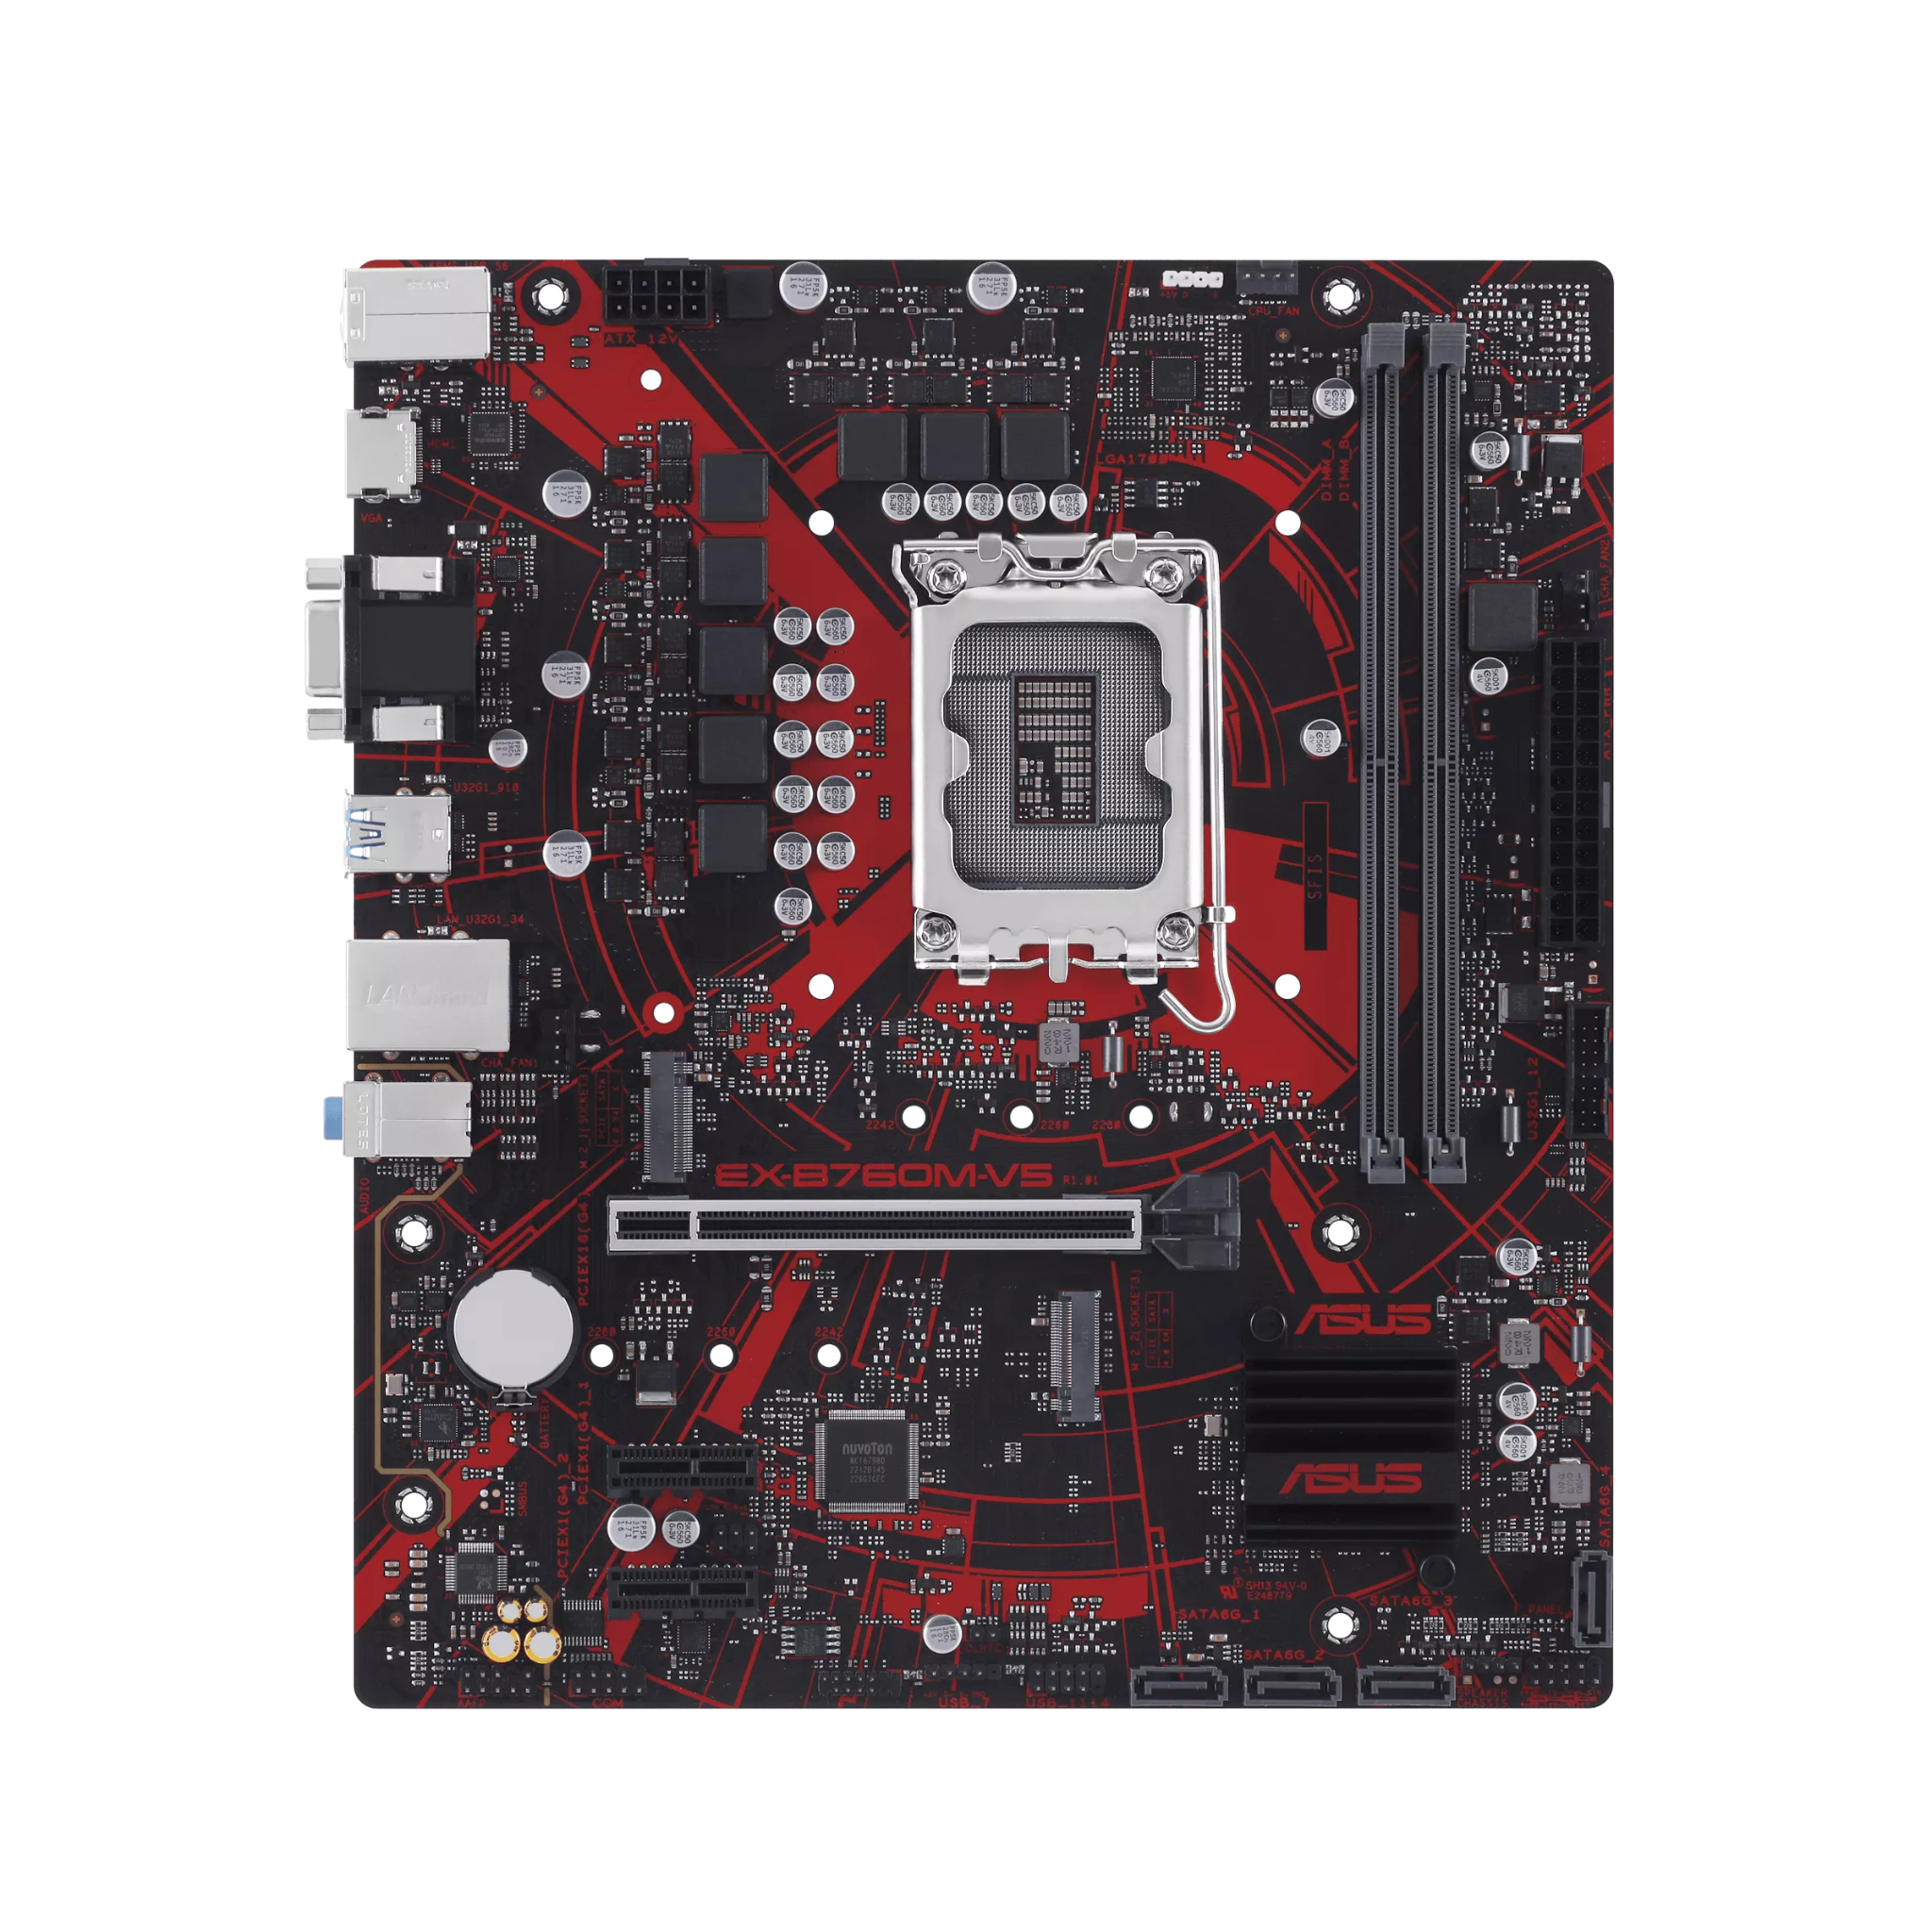 Mainboard ASUS EX-B760M-V5 | Intel B760, Socket 1700, mATX, 2 khe DDR5